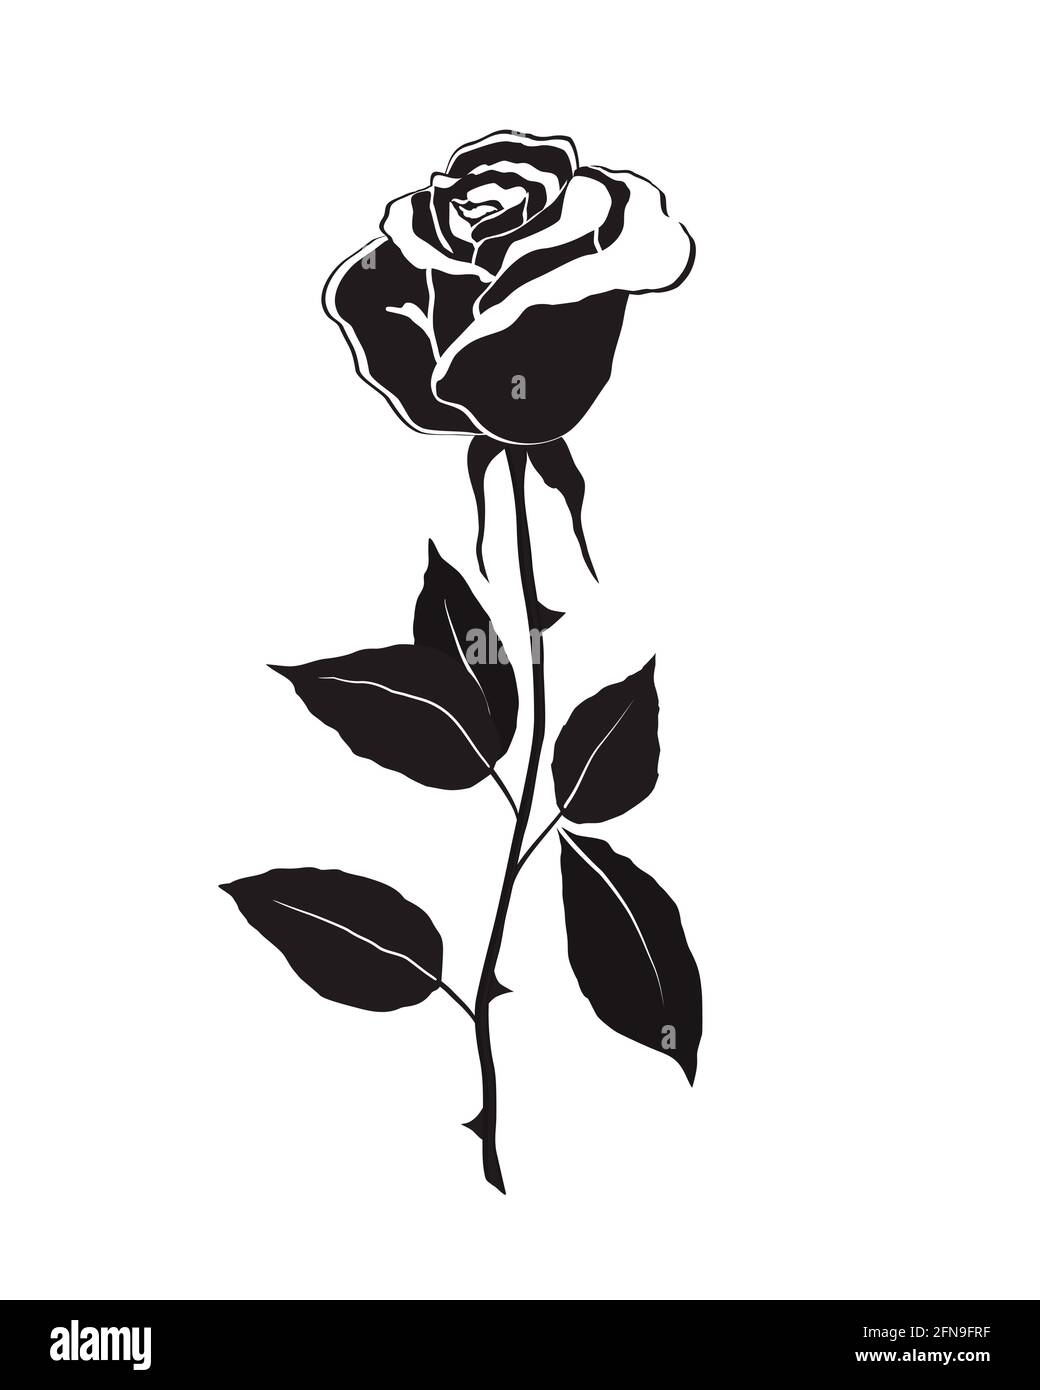 Hoa hồng được biết đến là biểu tượng của tình yêu và sự đam mê, và những bức ảnh hoa hồng bằng đen với lá trên nền trắng của chúng tôi không phải ngoại lệ. Với độ sắc nét và tinh tế, các bức hình này sẽ làm say lòng những ai yêu thích vẻ đẹp hoa hồng.